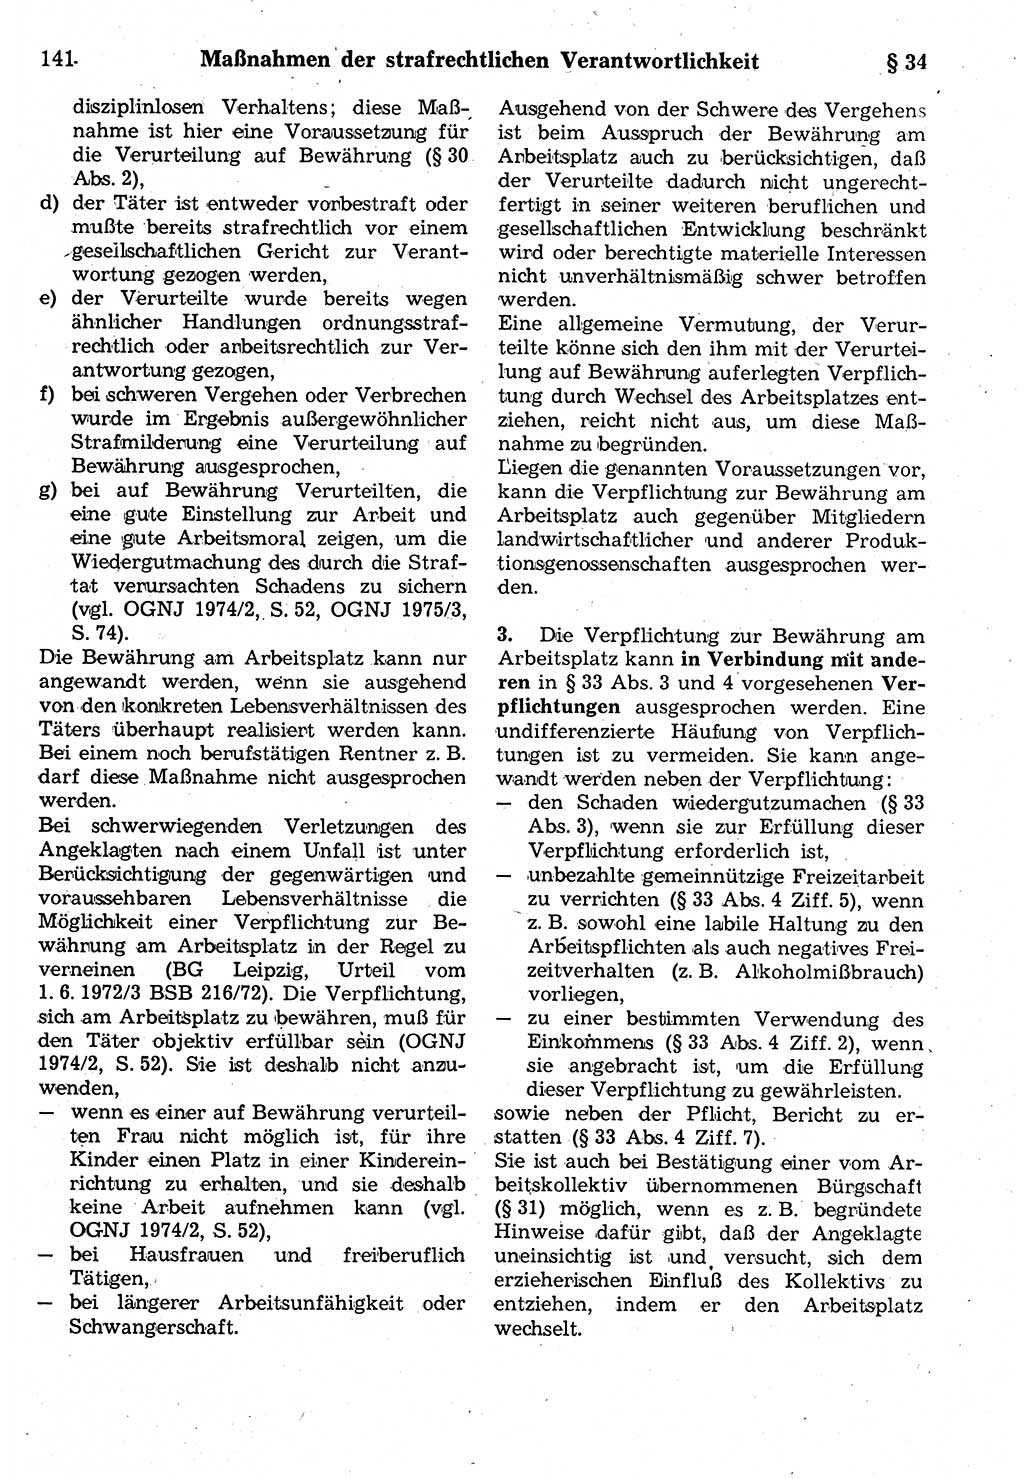 Strafrecht der Deutschen Demokratischen Republik (DDR), Kommentar zum Strafgesetzbuch (StGB) 1987, Seite 141 (Strafr. DDR Komm. StGB 1987, S. 141)